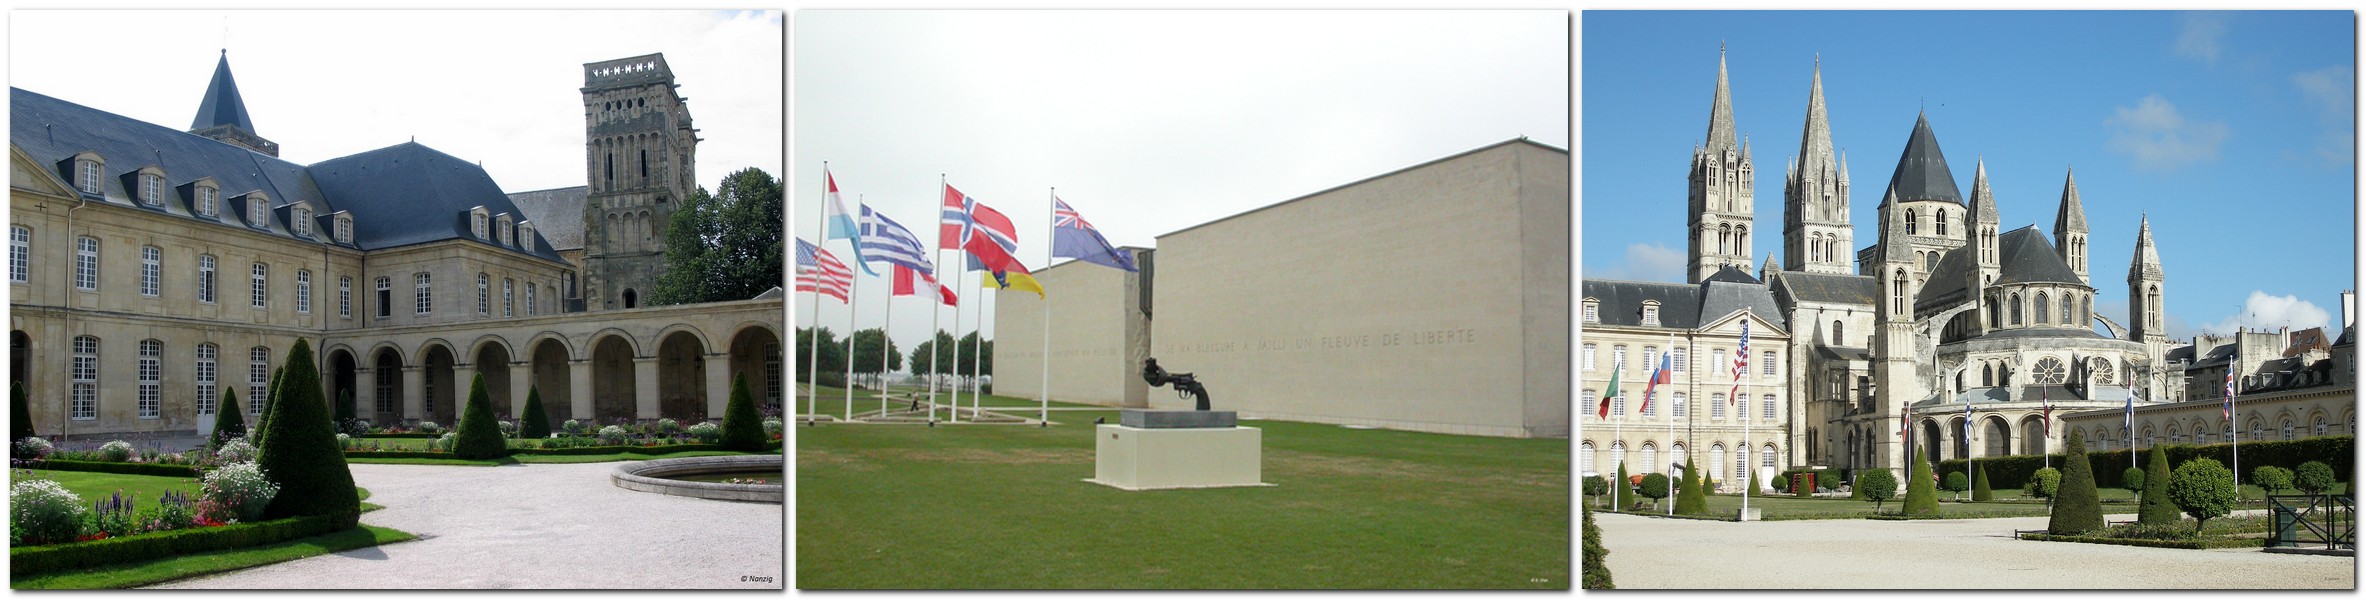 Caen - Memorial